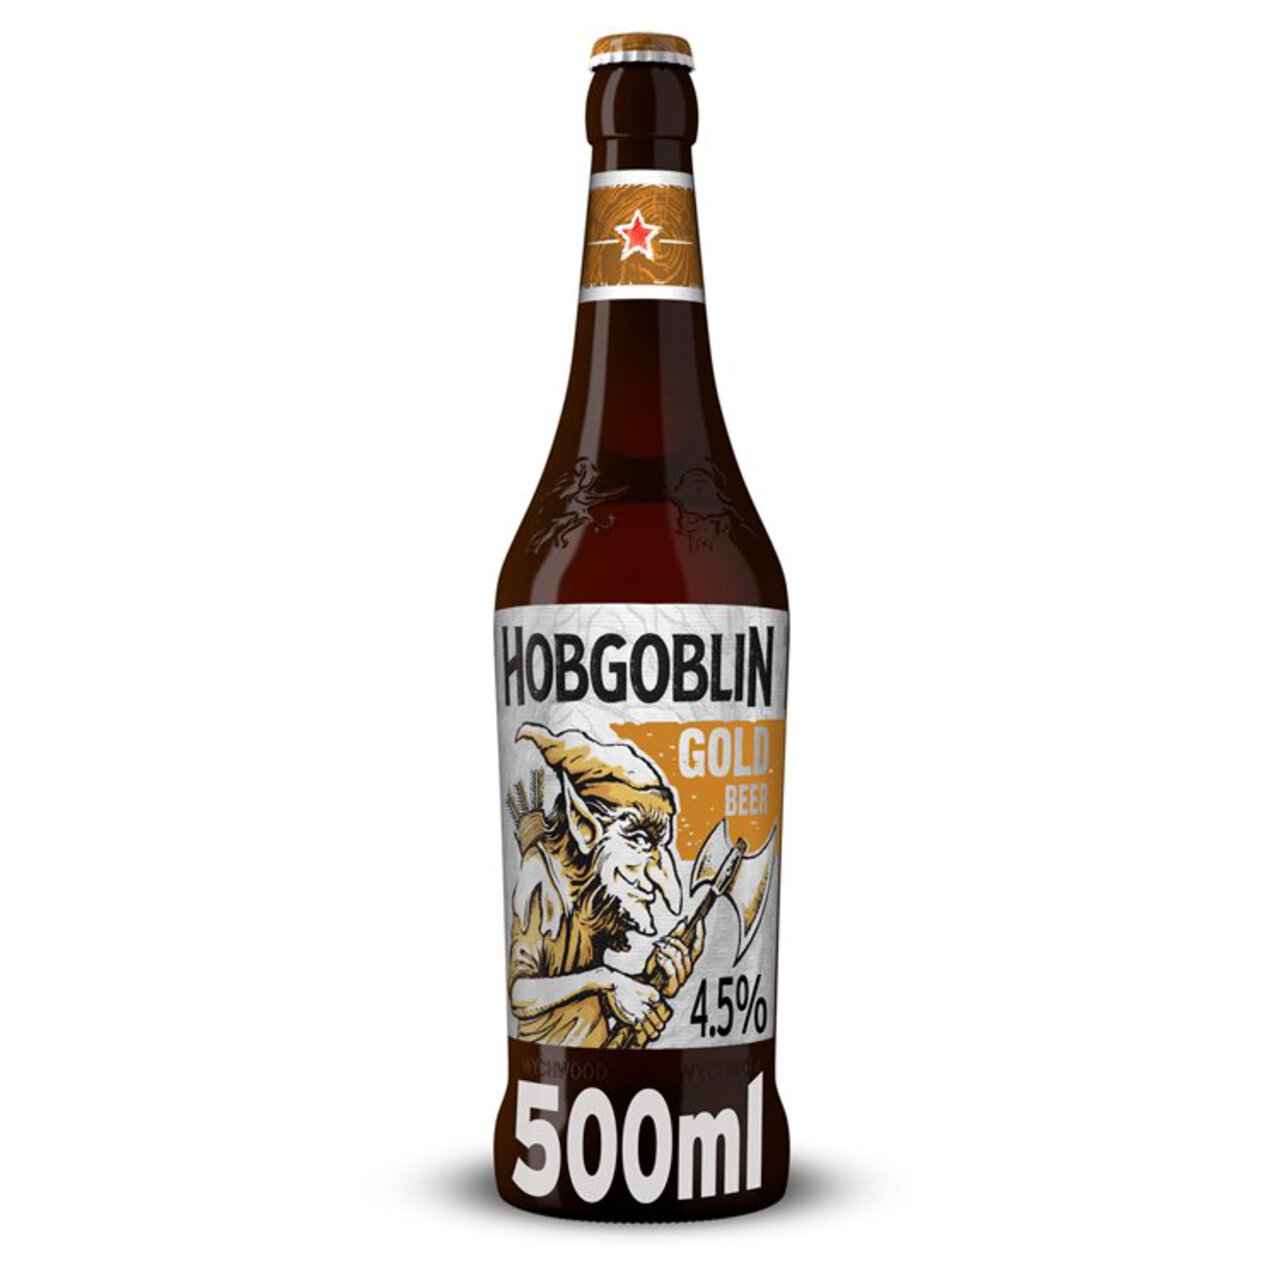 Hobgoblin Gold Ale Beer Bottle 500ml